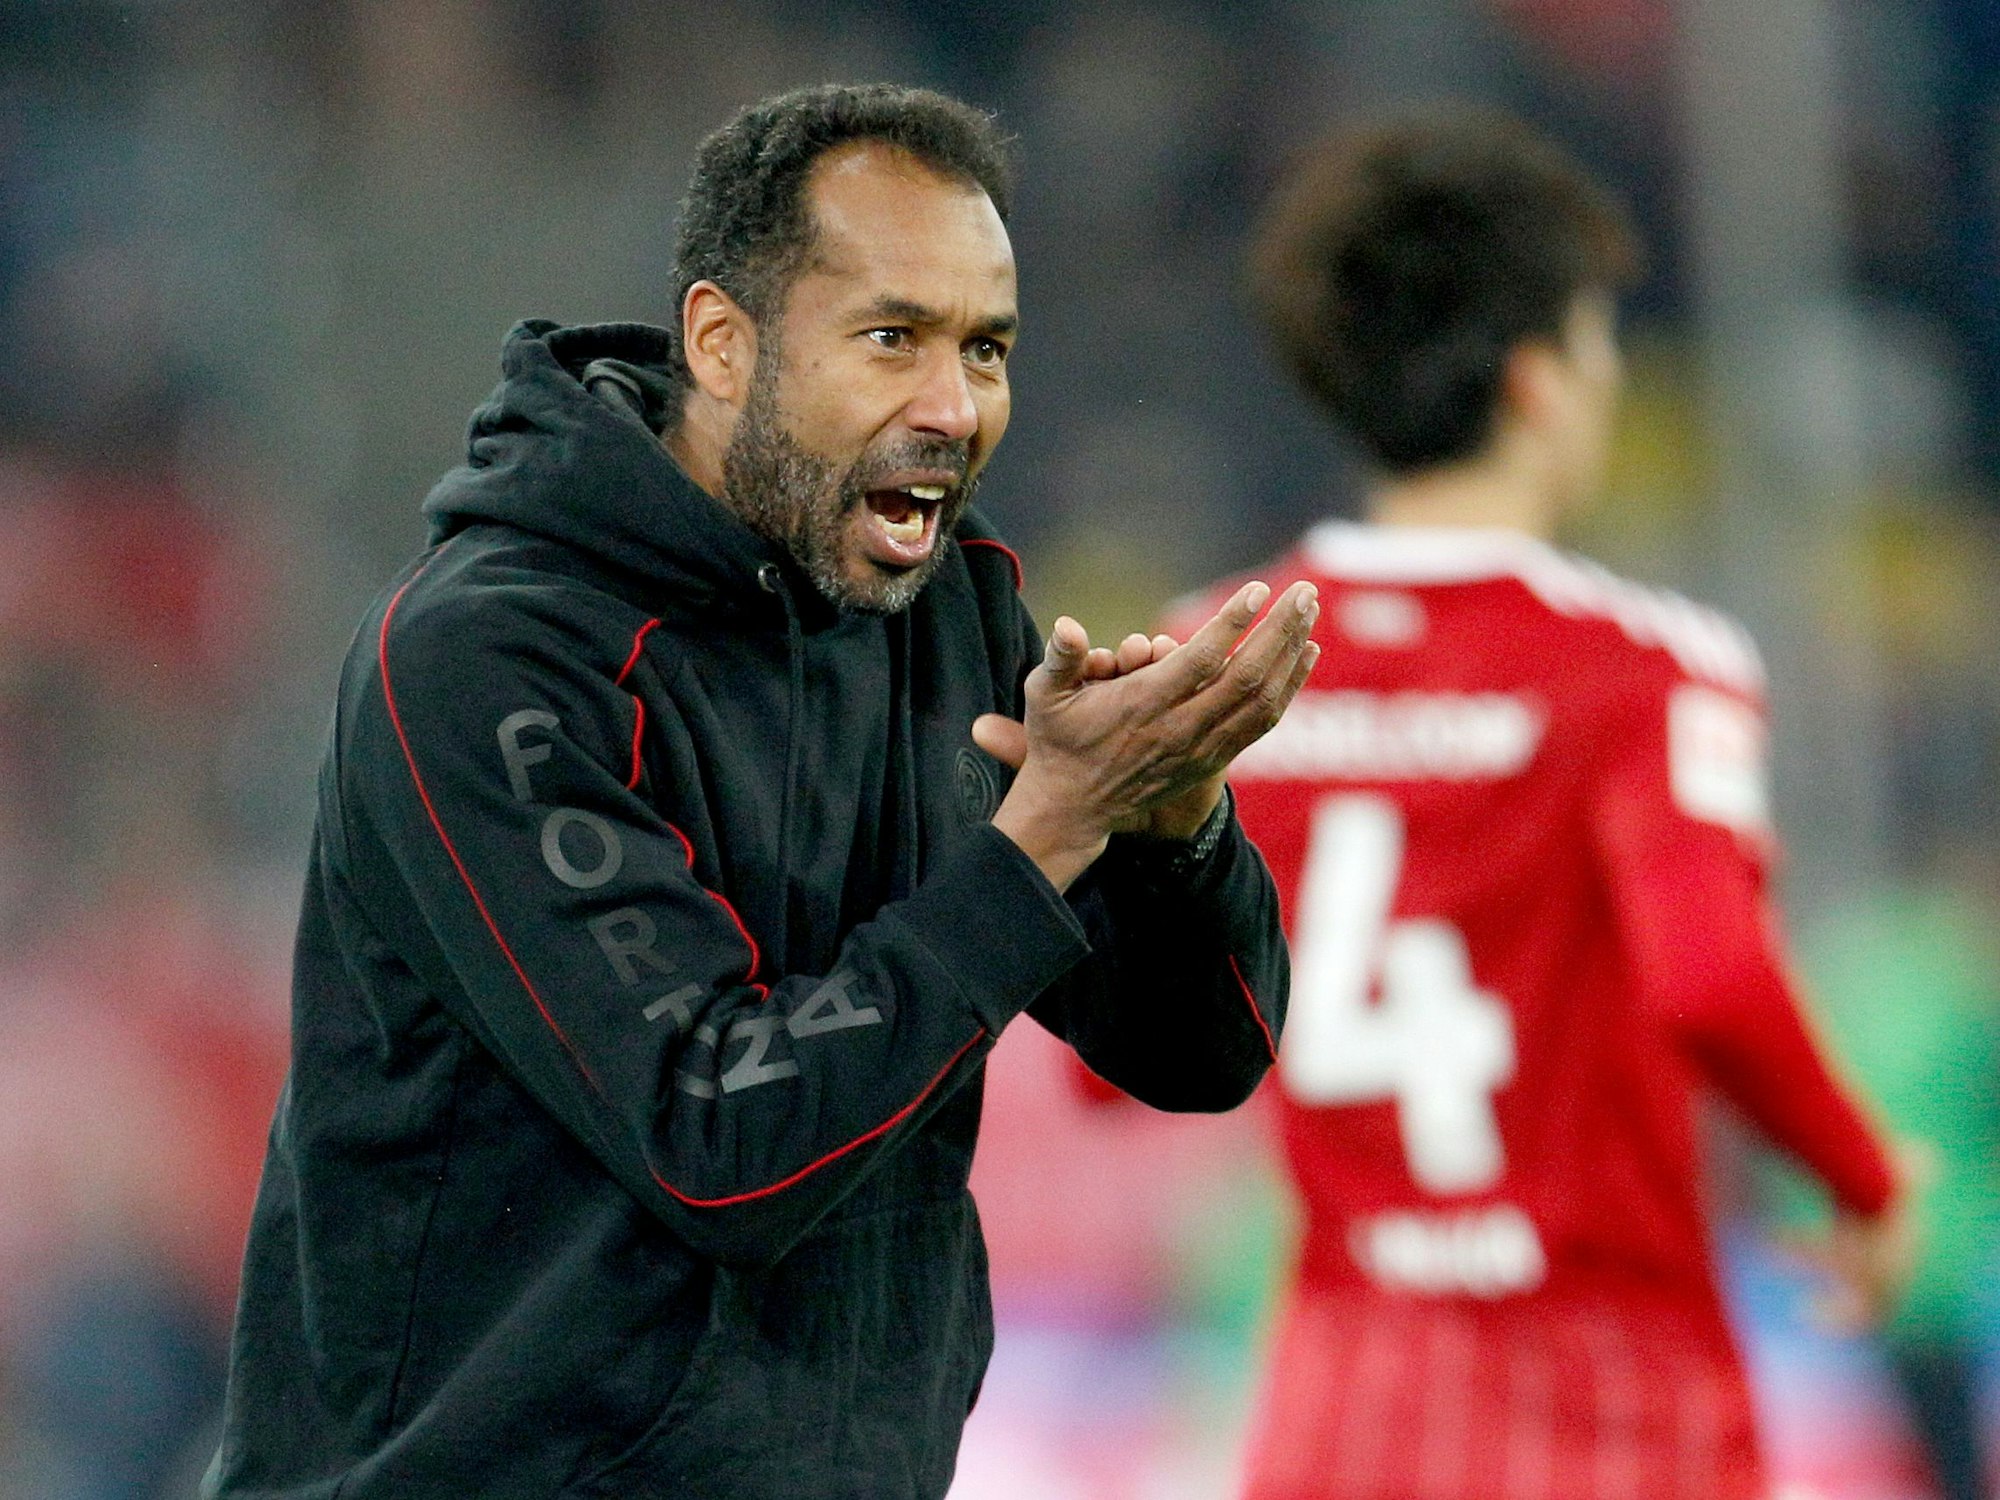 Thioune motiviert seine Mannschaft aus der Trainerzone im Spiel gegen den 1. FC Magdeburg.